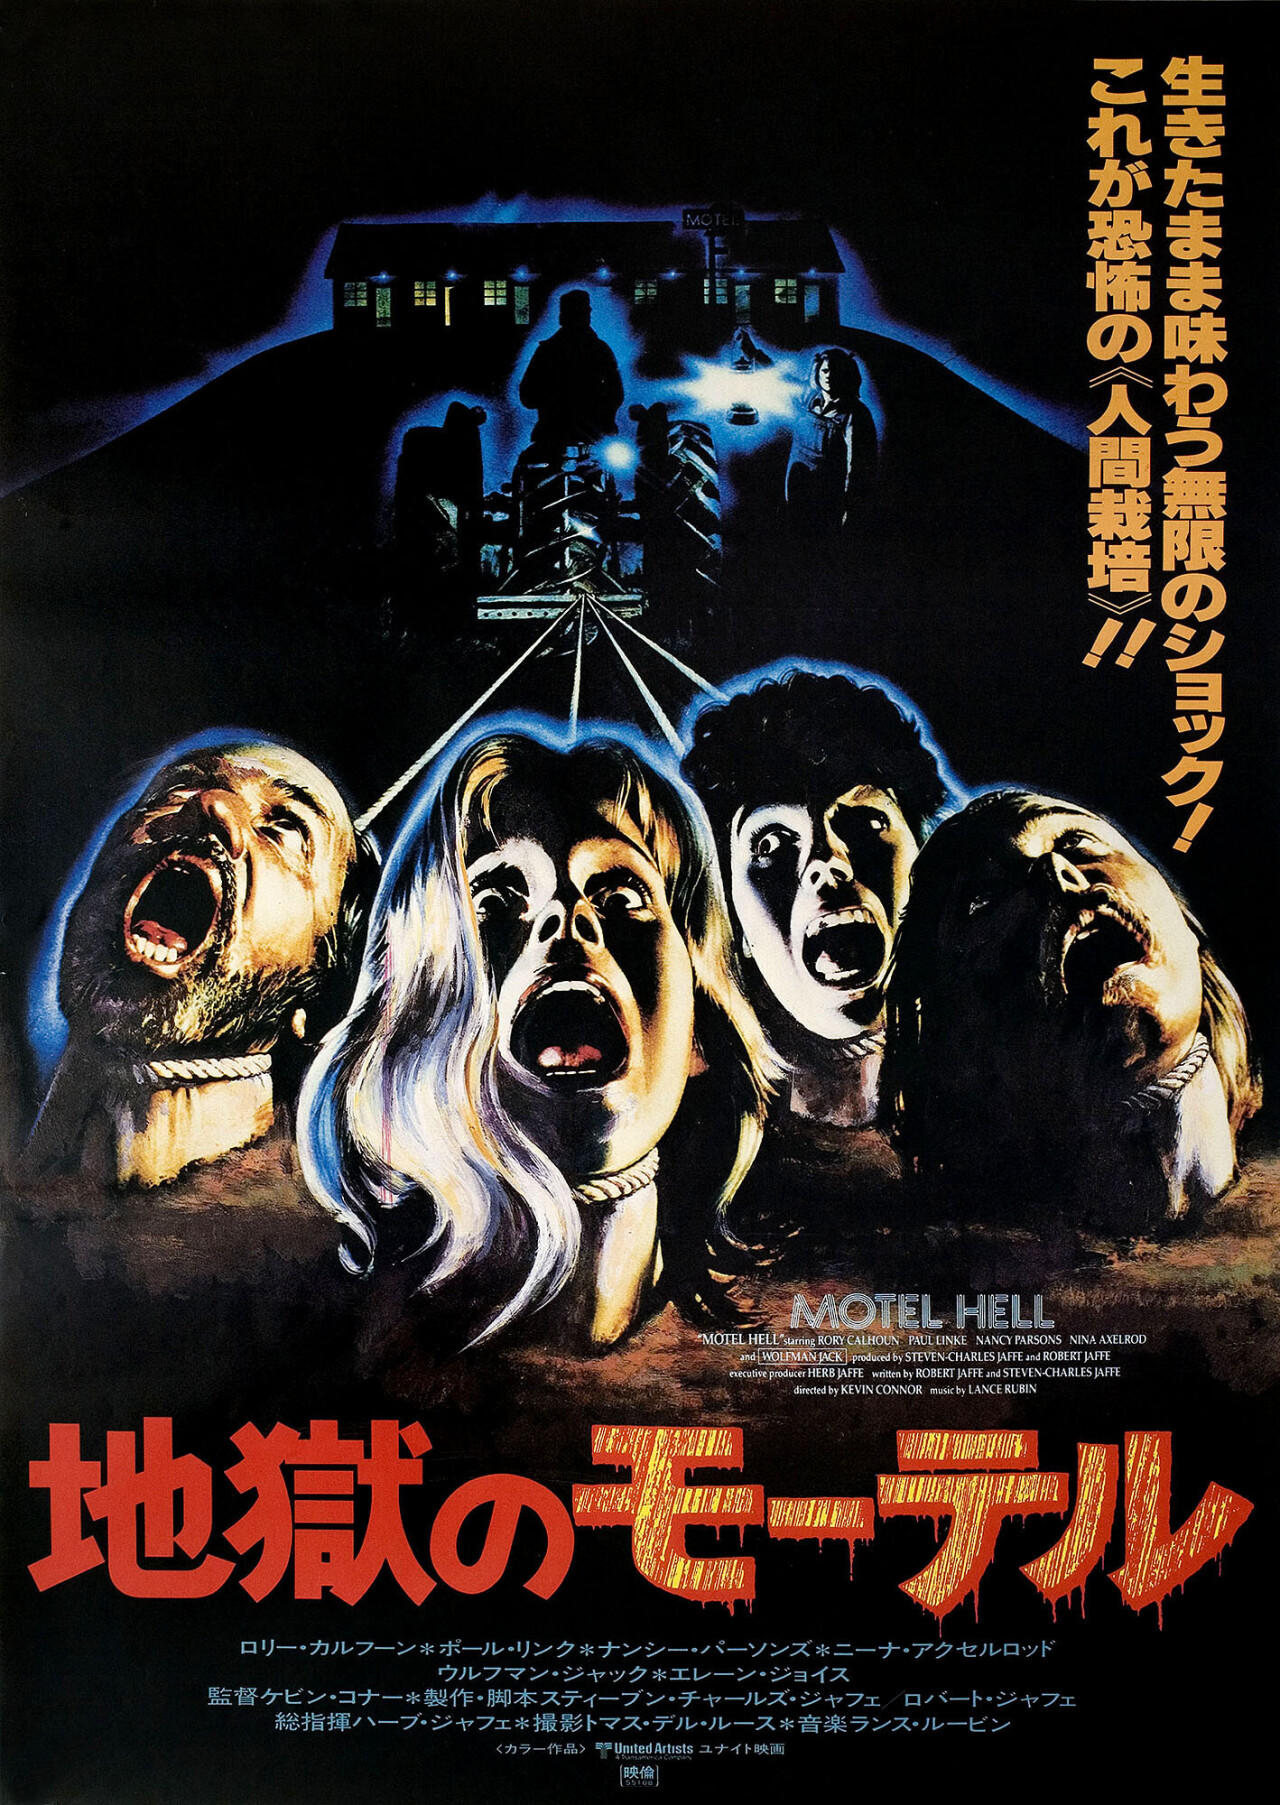 Адский мотель (Motel Hell, 1980), режиссёр Кевин Коннор, японский постер к фильму (ужасы, 1980 год)